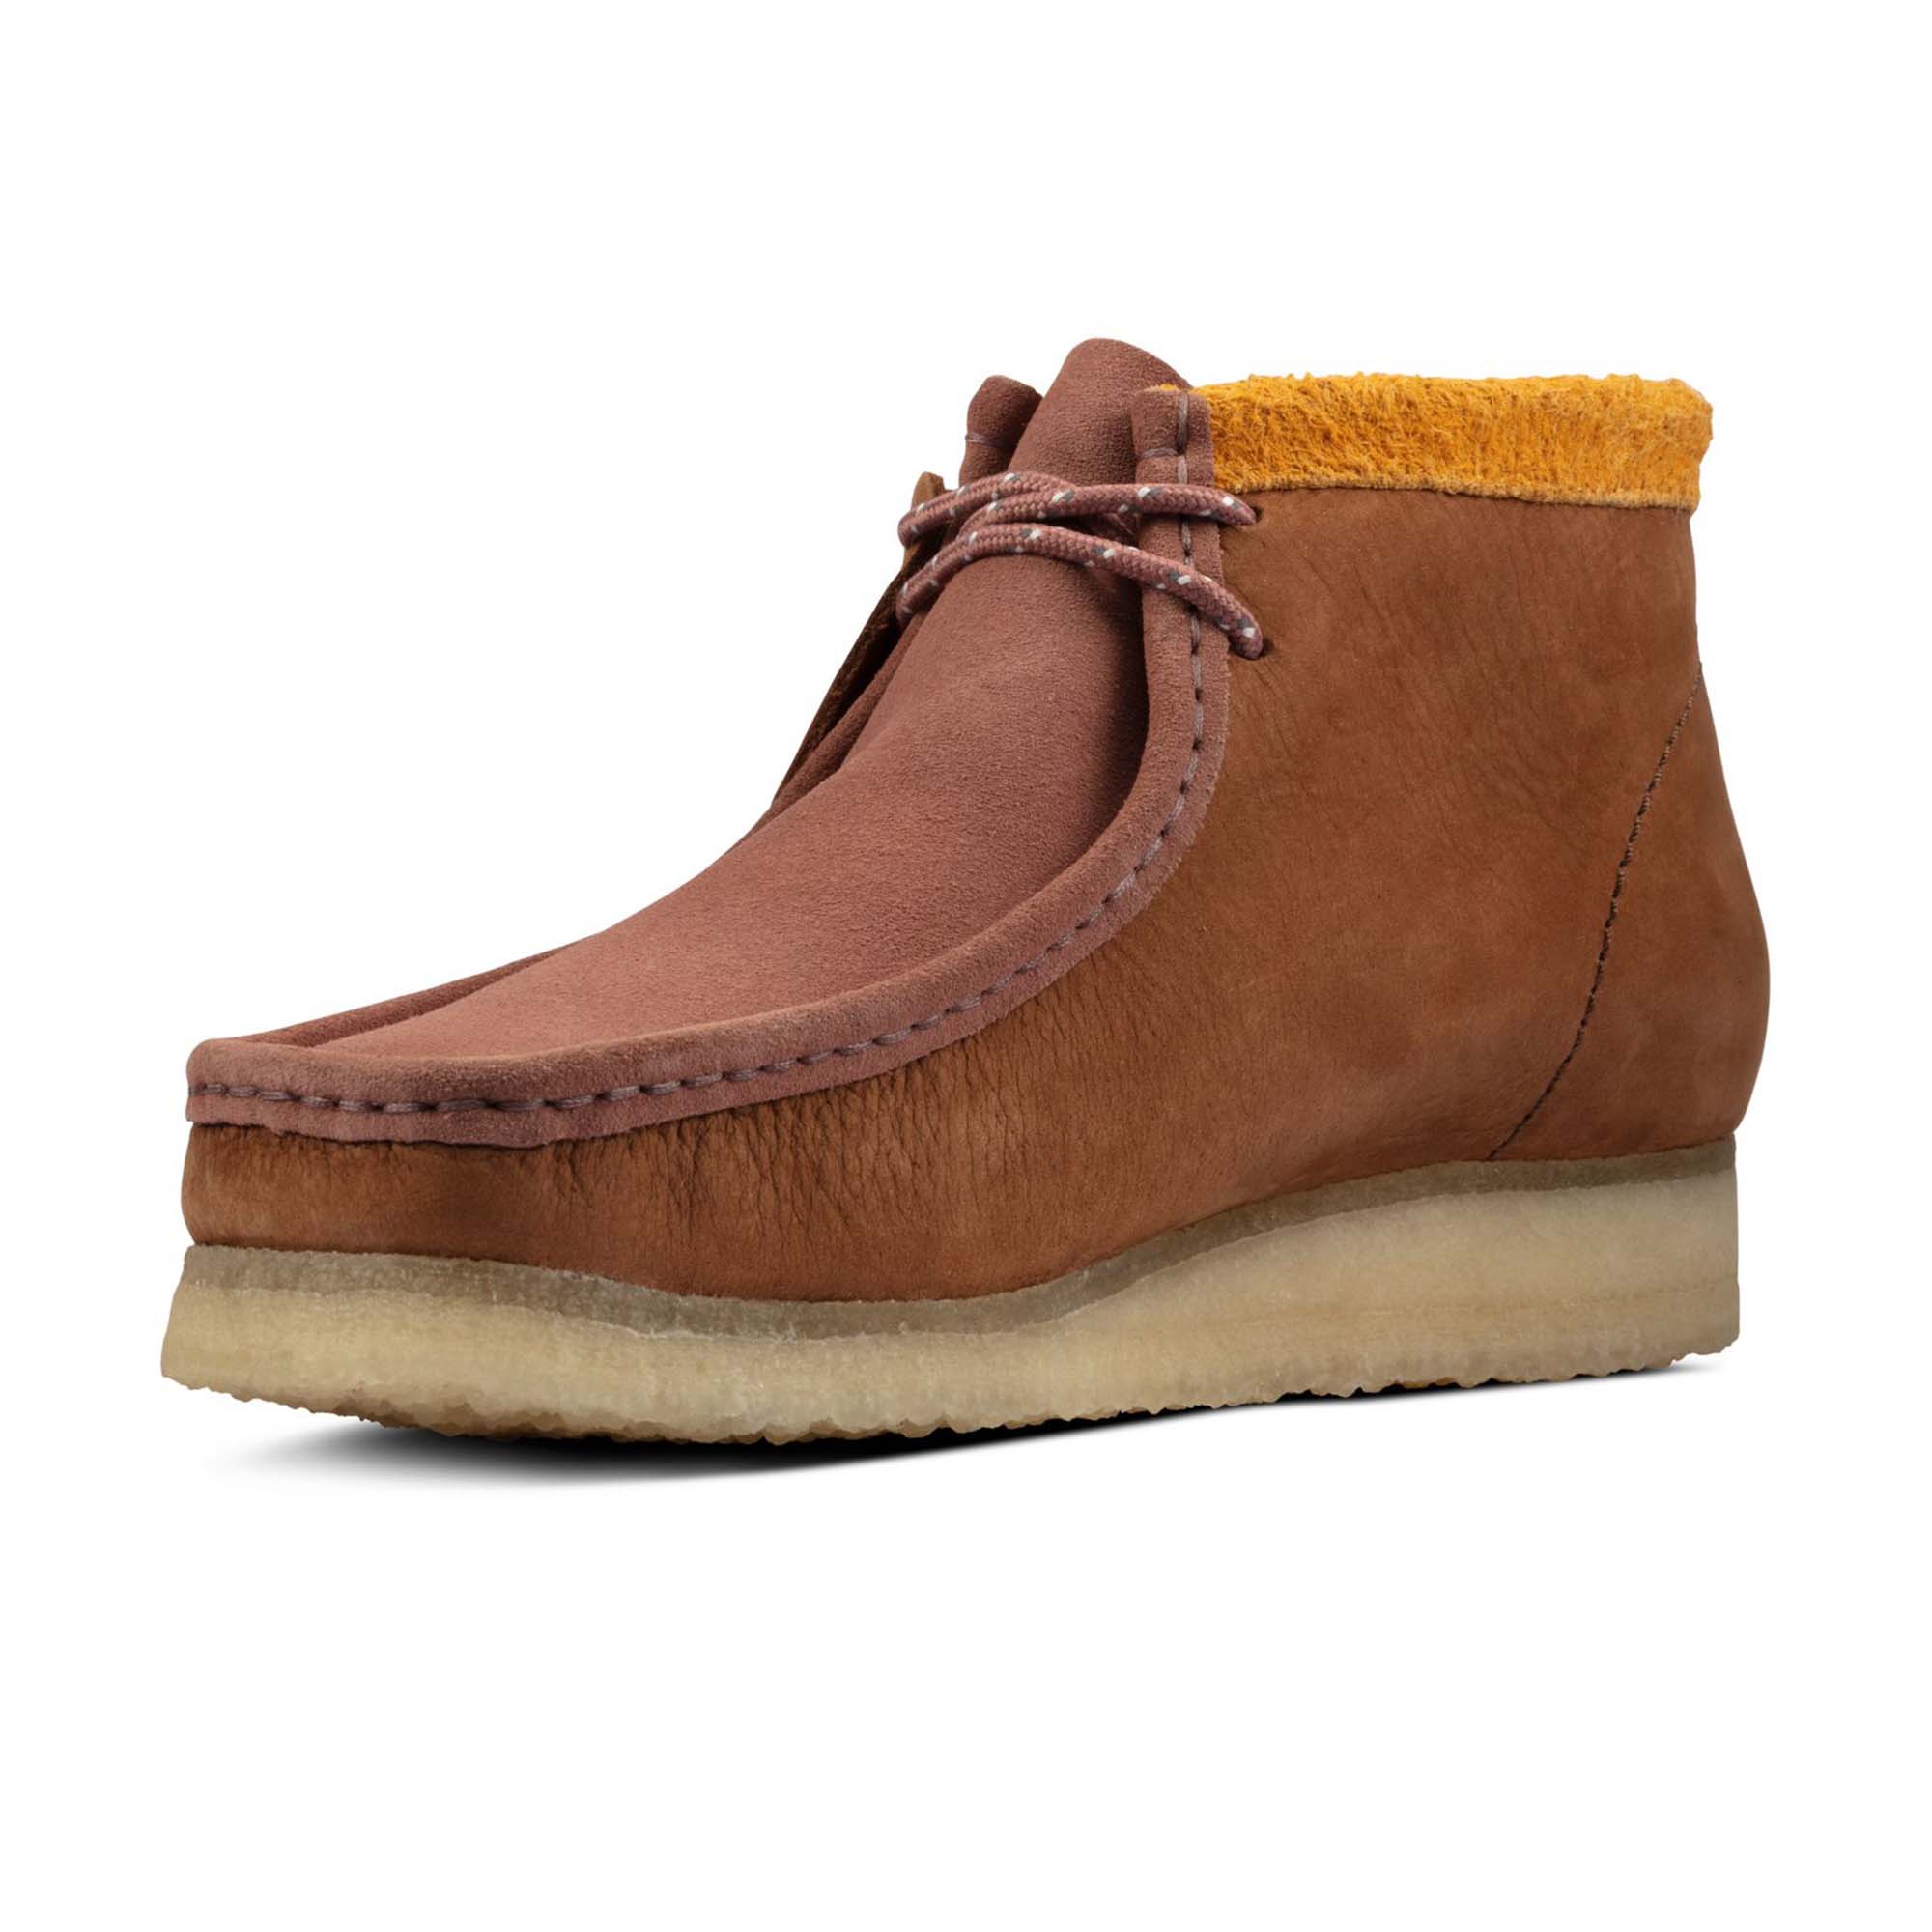 Clarks Originals Wallabee Boot - Terracotta/Rust